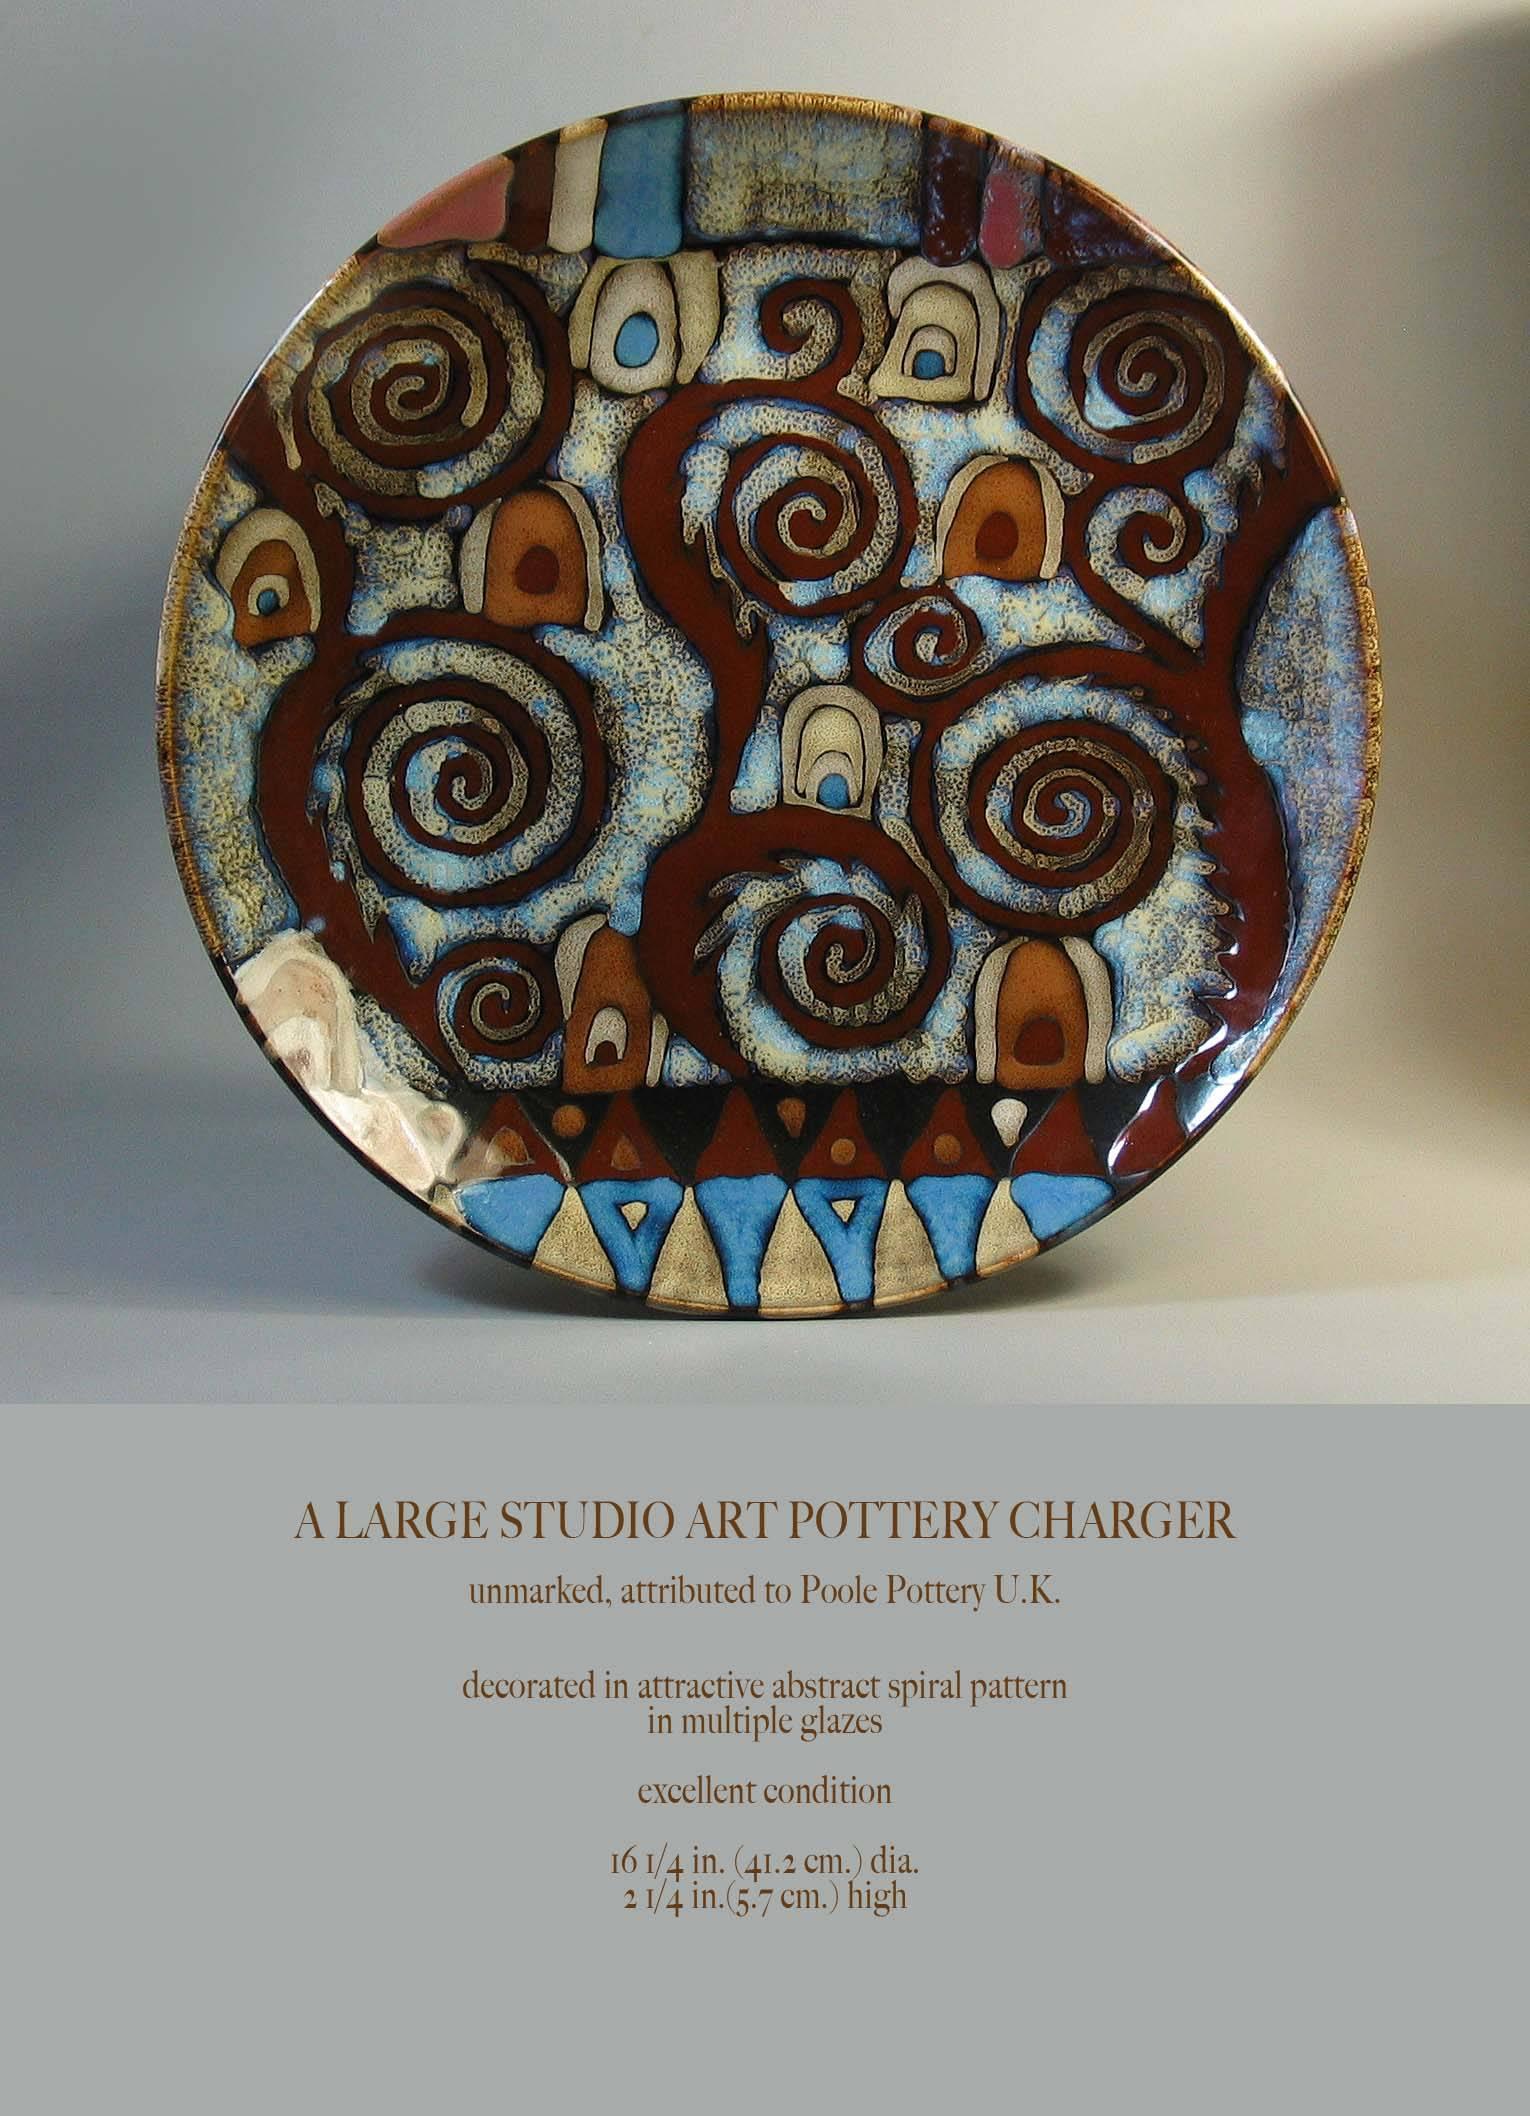 Ein großes abstraktes Studio Art Pottery Ladegerät, unmarkiert, zugeschrieben Poole Pottery K.K. Dekoriert mit einem attraktiven abstrakten Spiralmuster in mehreren Glasuren, ausgezeichneter Zustand. Das Ladegerät misst 16 1/4 Zoll im Durchmesser